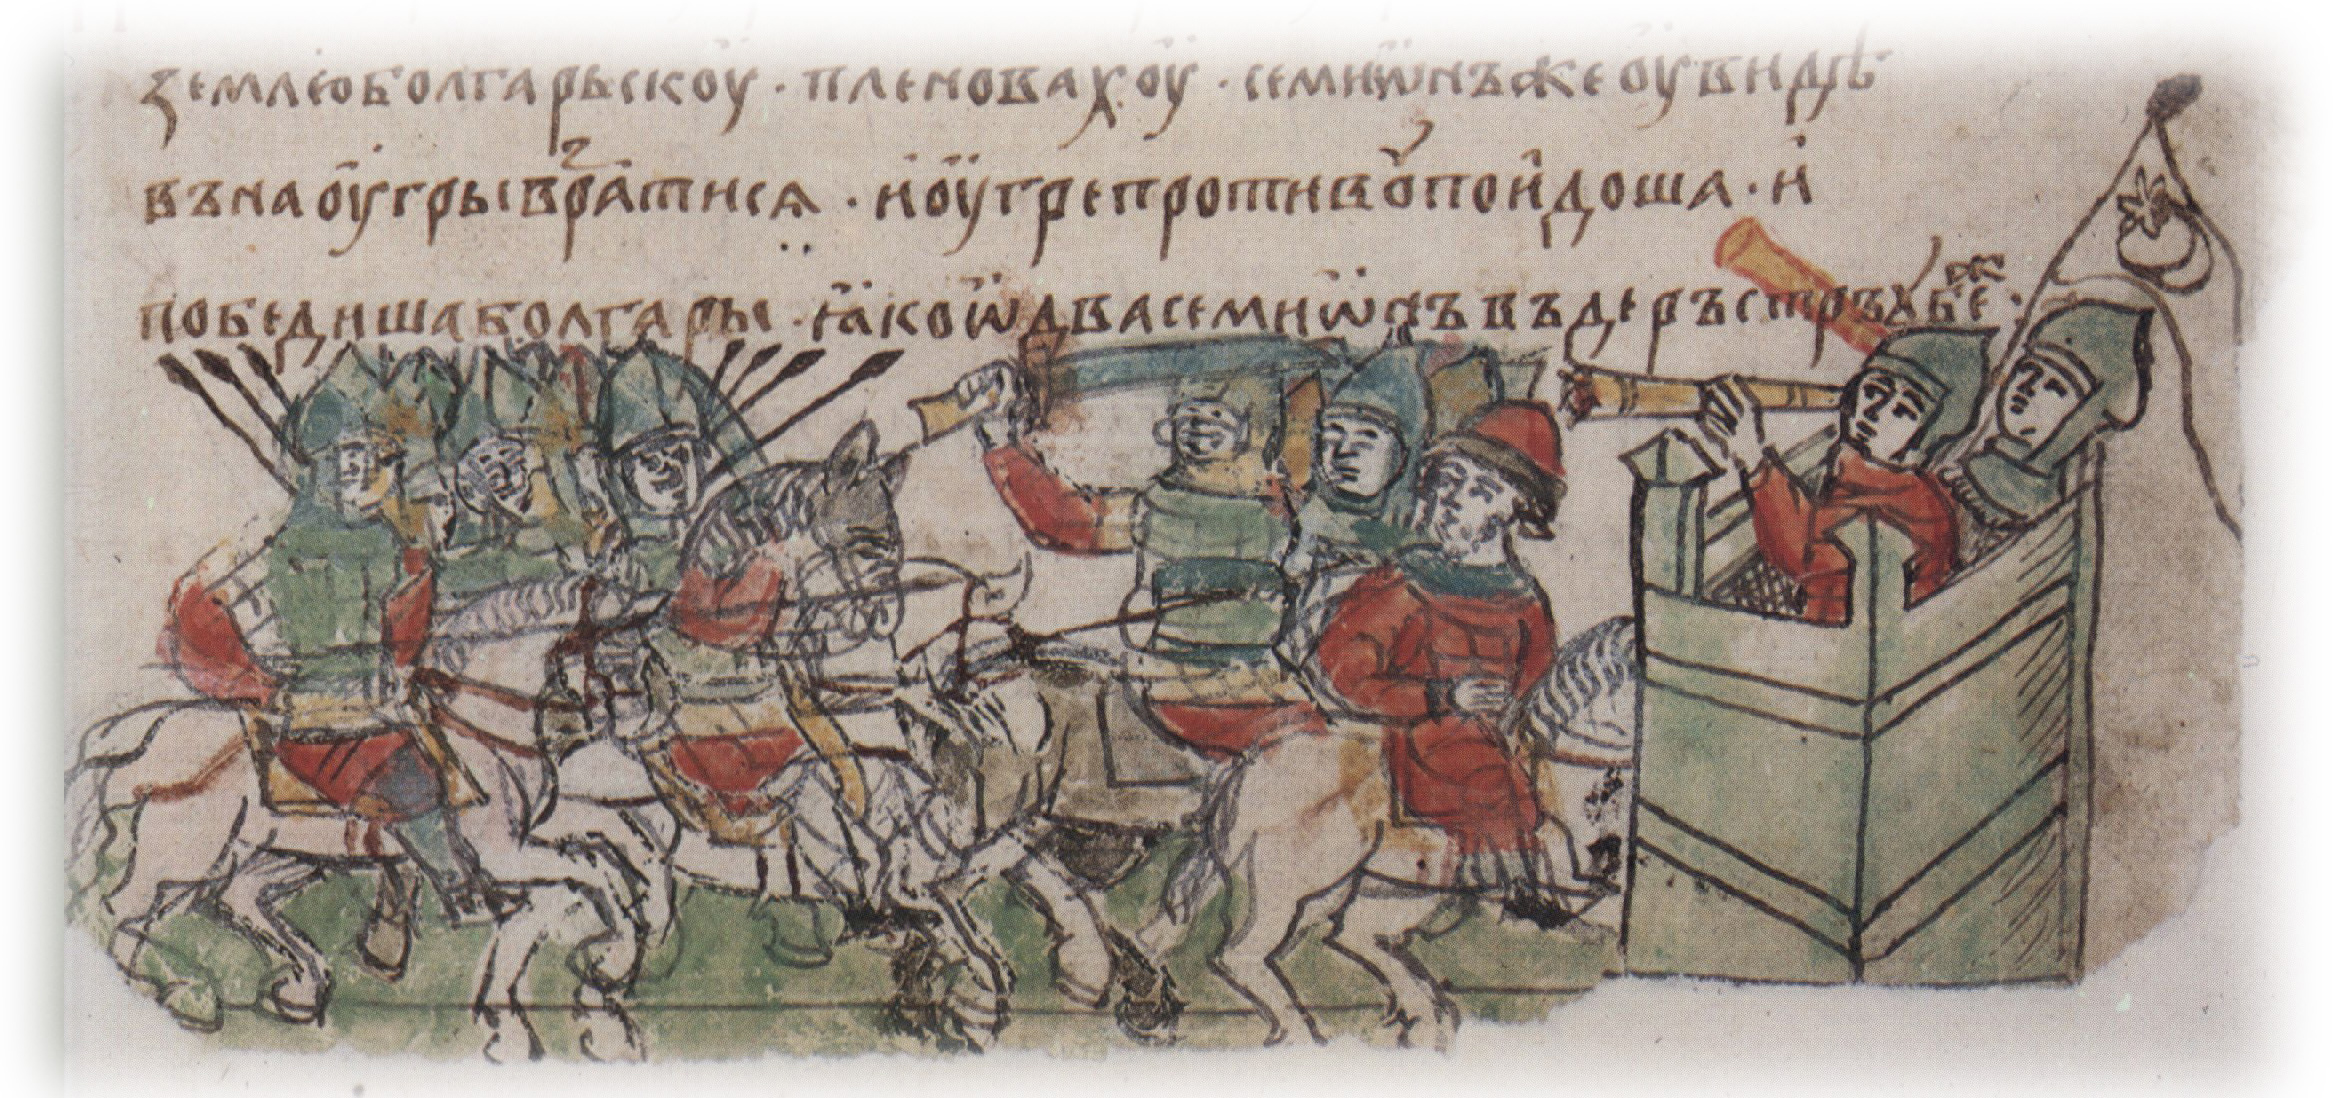 Битва угров (венгров) с болгарами; спасение болгарского царя Симеона в Дерестре.